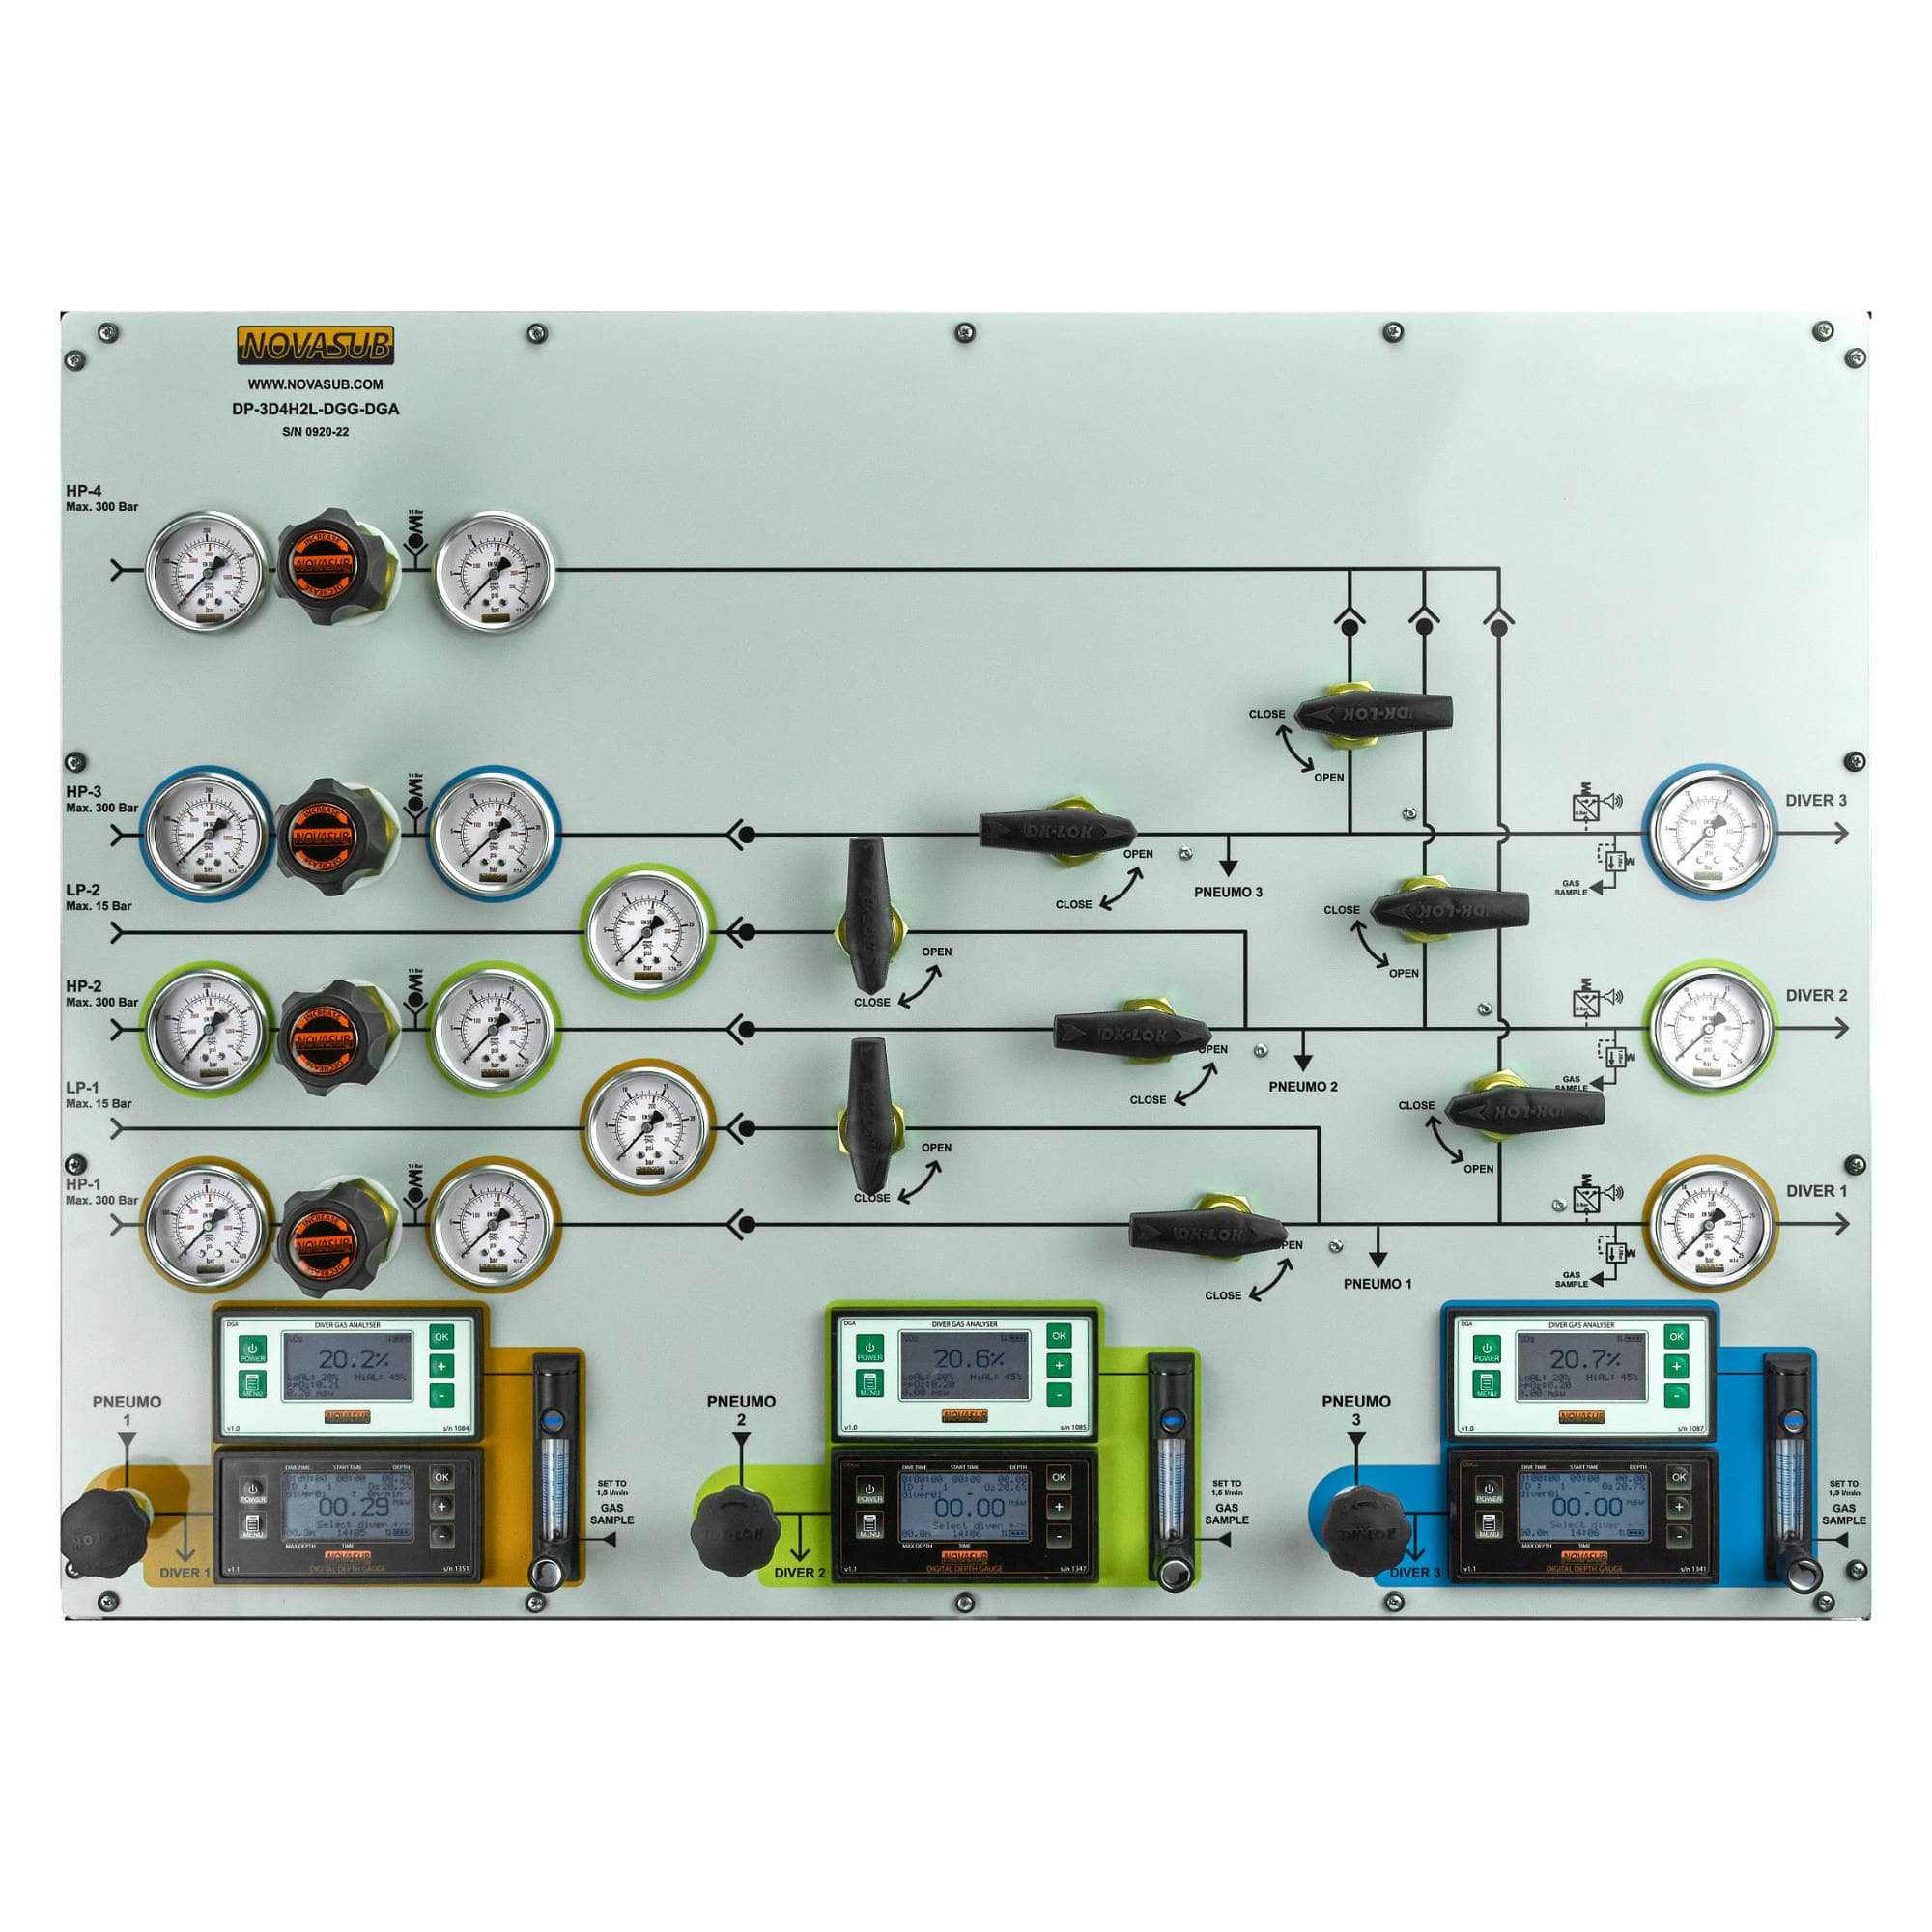 BOREAS-R1 - Panelmount 3 divers, 4 HP, 2 LP air panel - MAIN